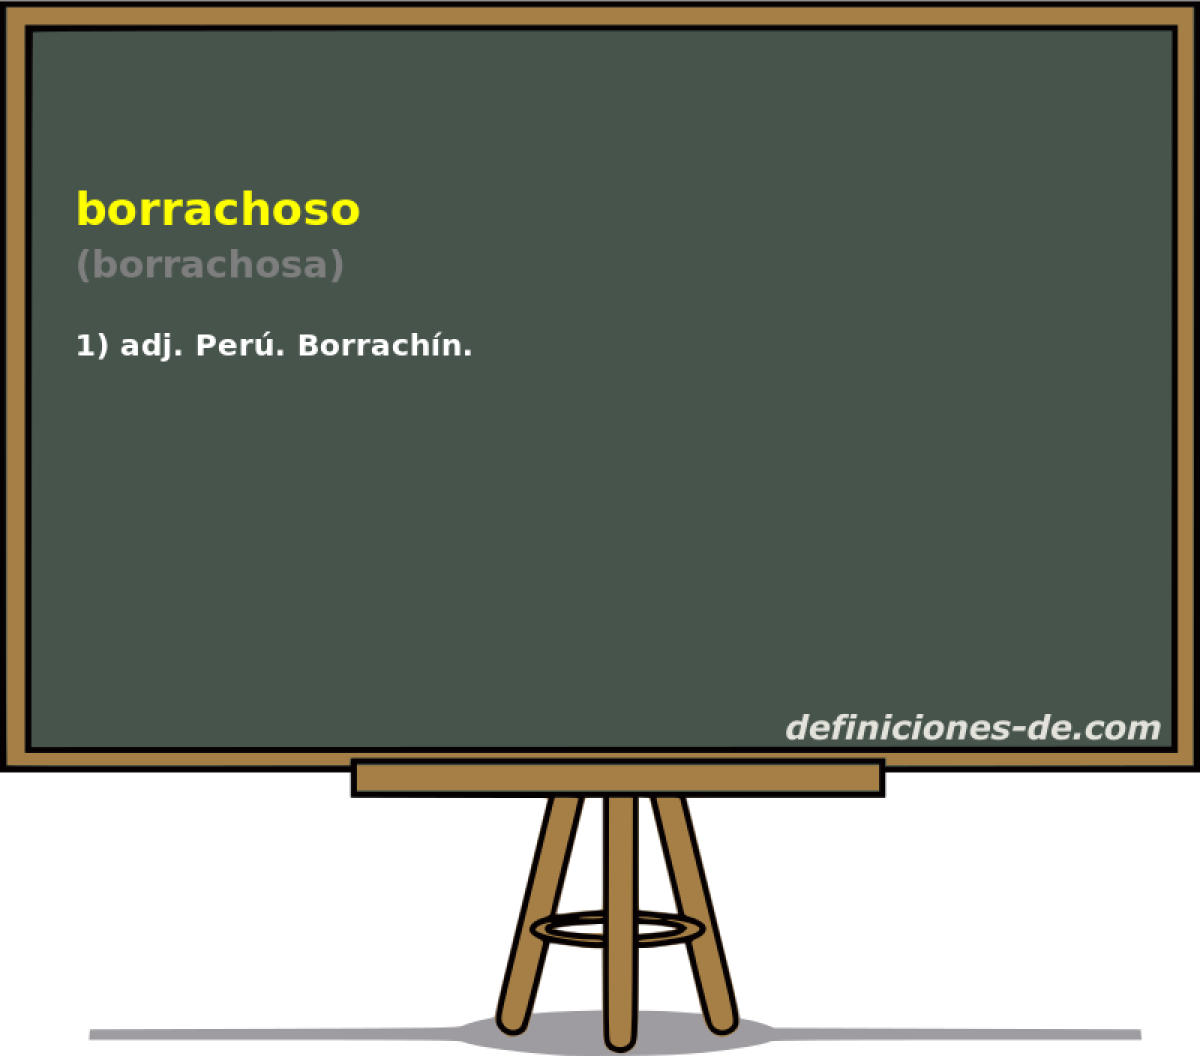 borrachoso (borrachosa)